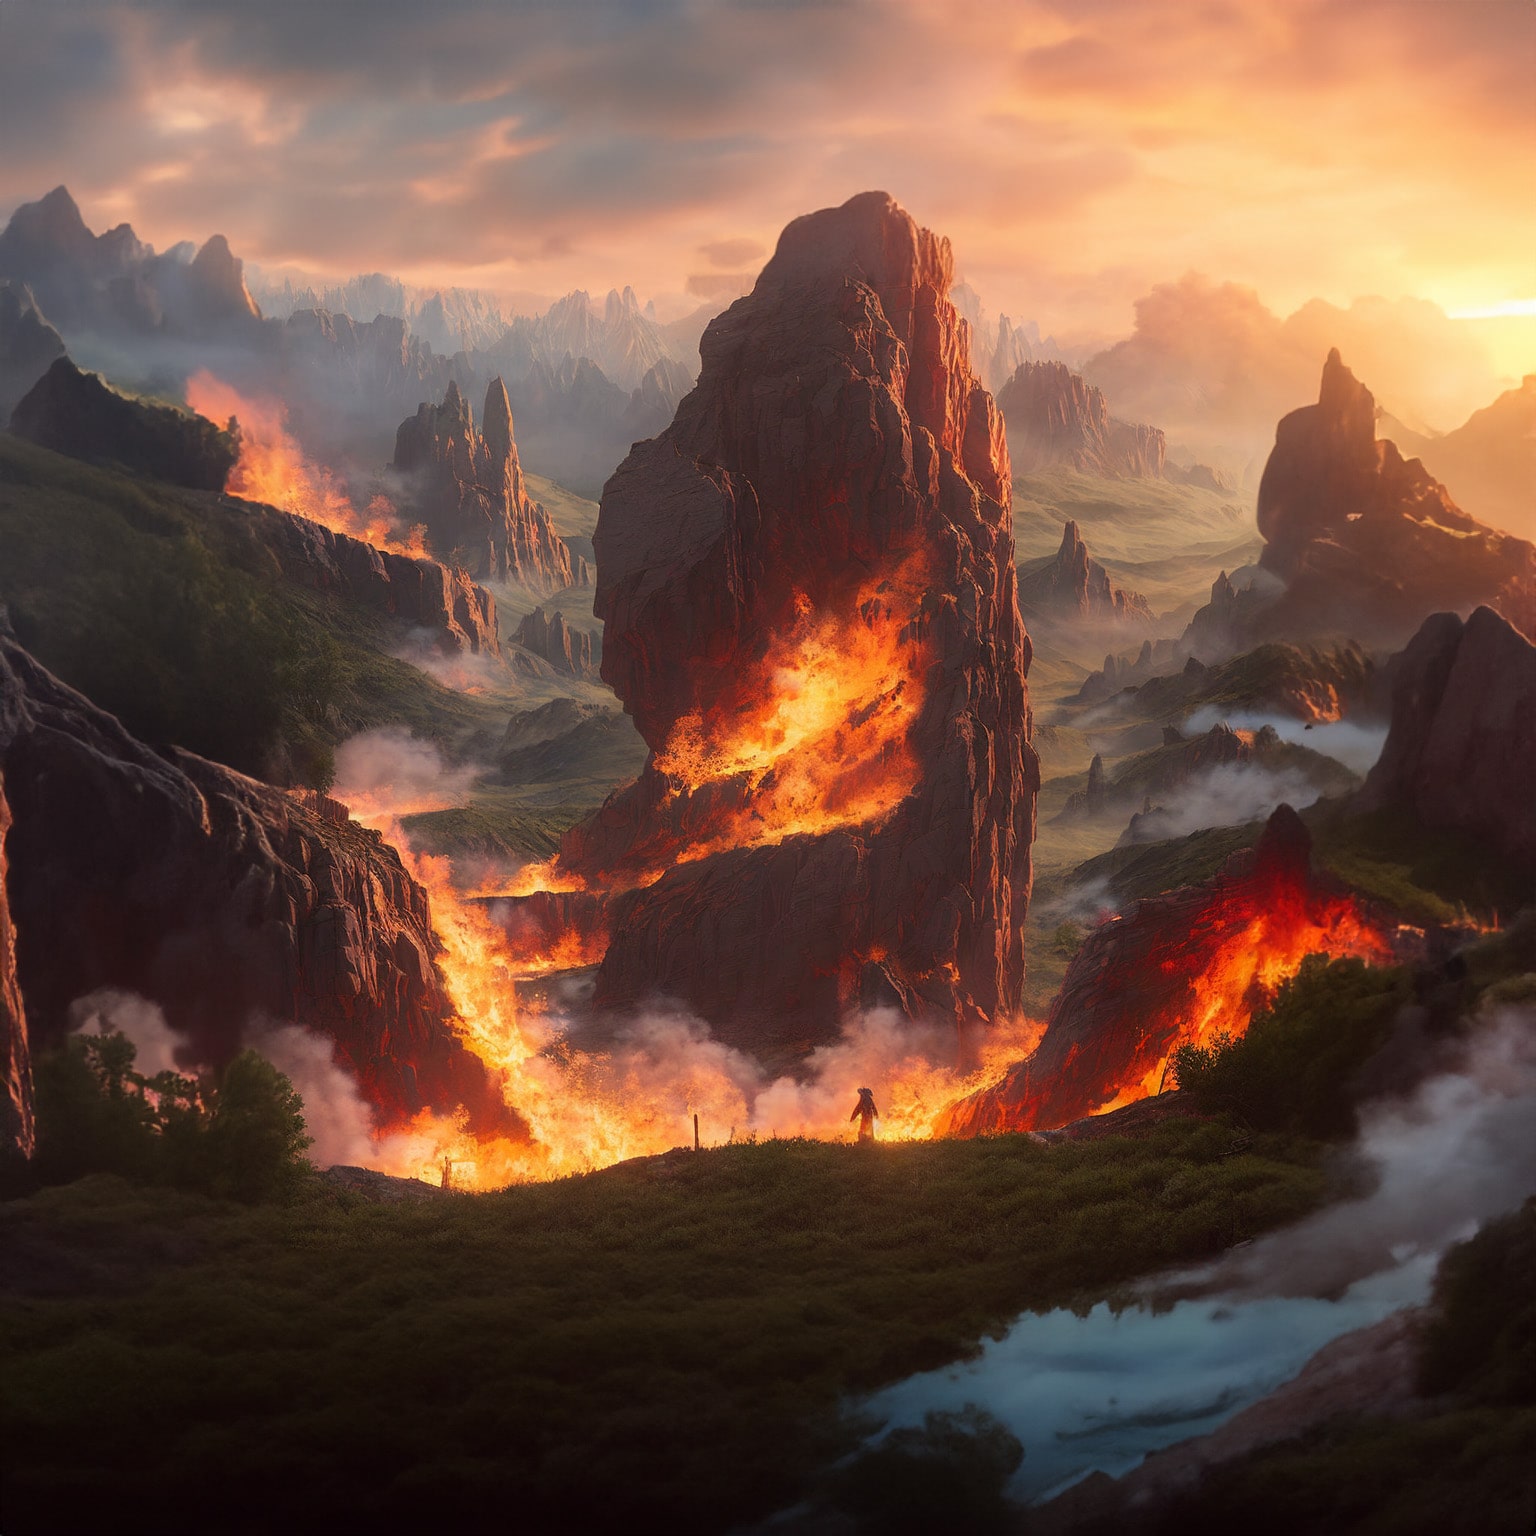 Ein KI Bild von einem Mann der vor einem brennenden Berg steht